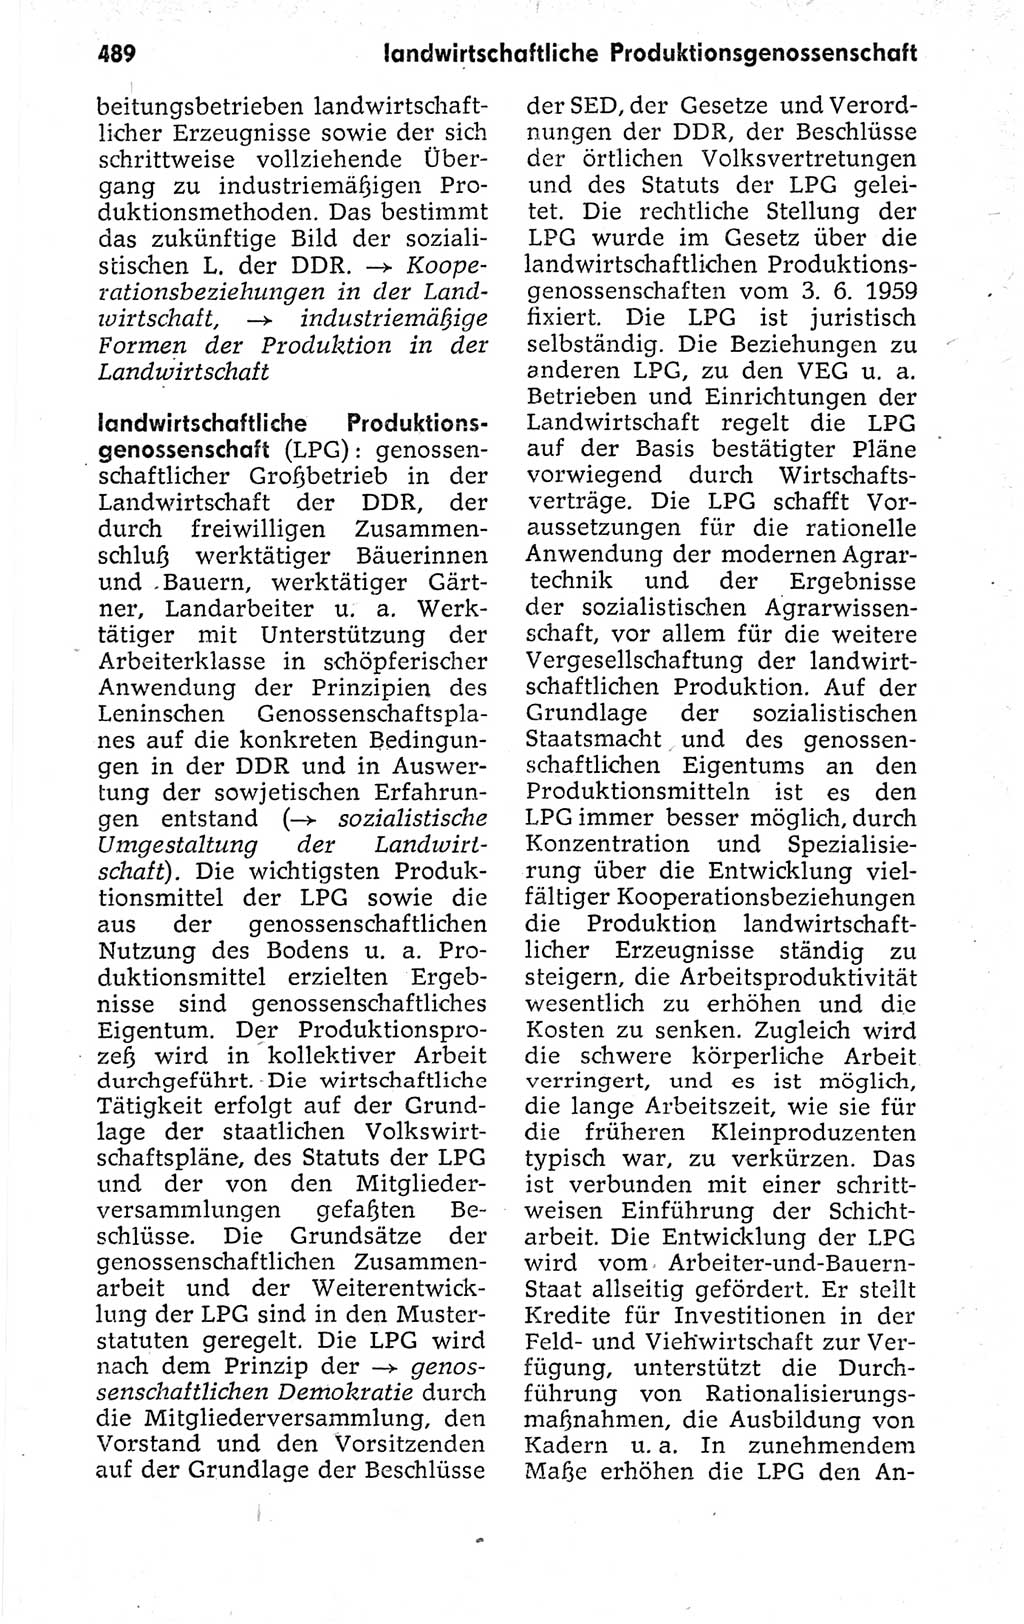 Kleines politisches Wörterbuch [Deutsche Demokratische Republik (DDR)] 1973, Seite 489 (Kl. pol. Wb. DDR 1973, S. 489)